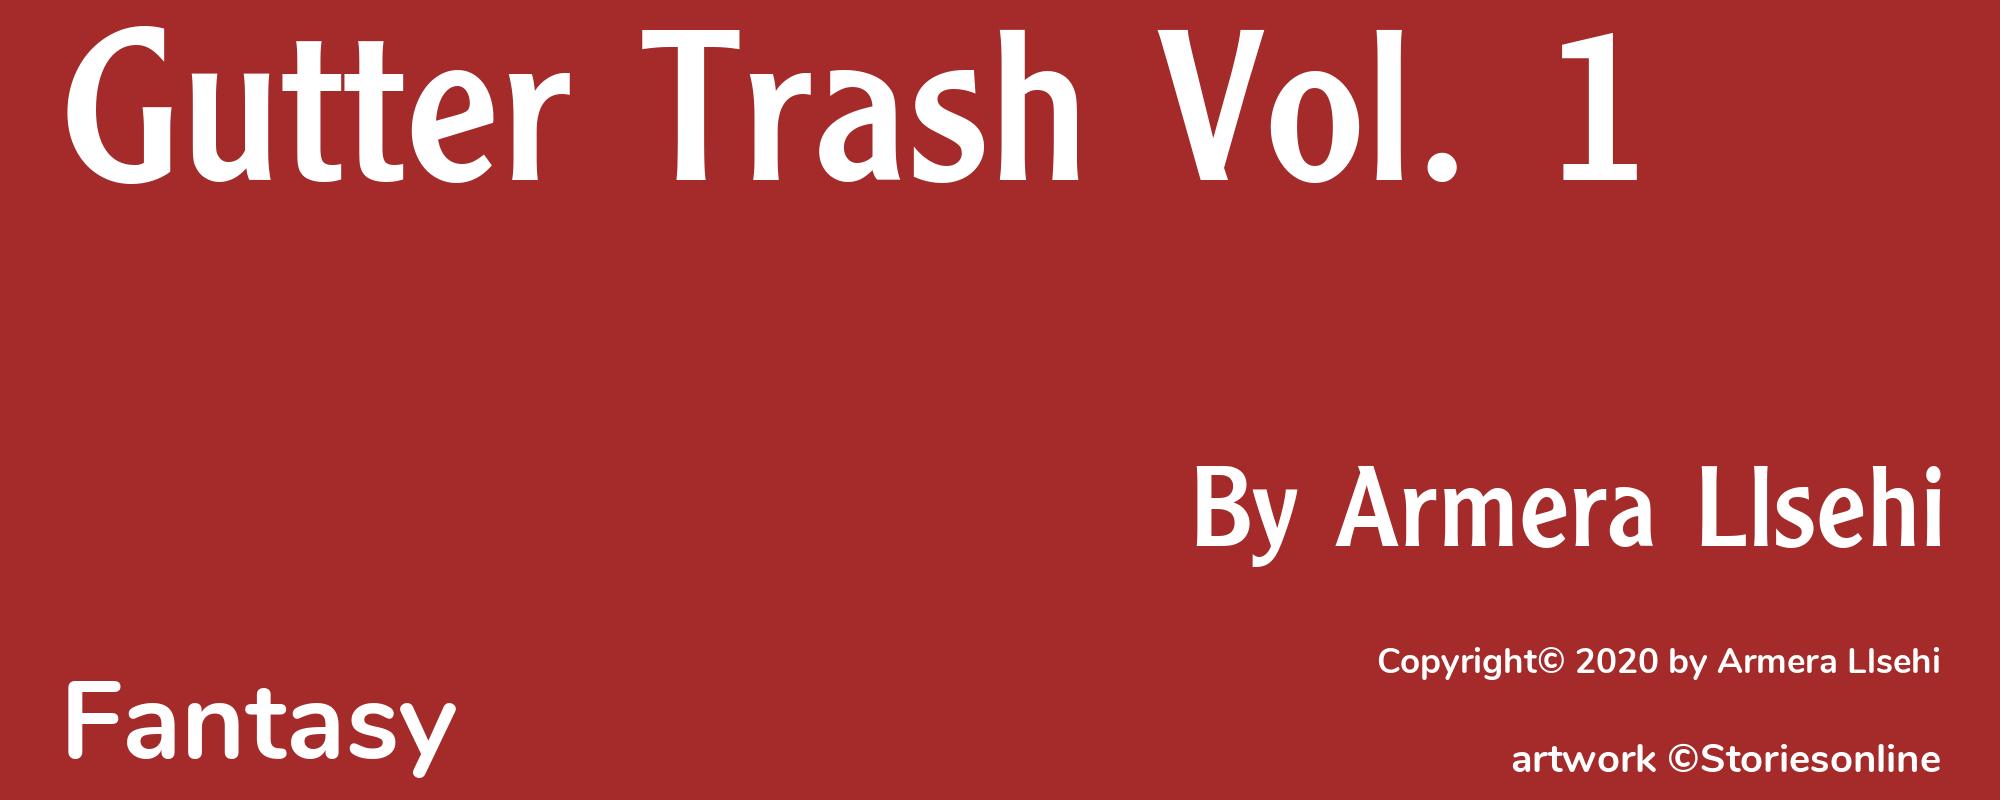 Gutter Trash Vol. 1 - Cover